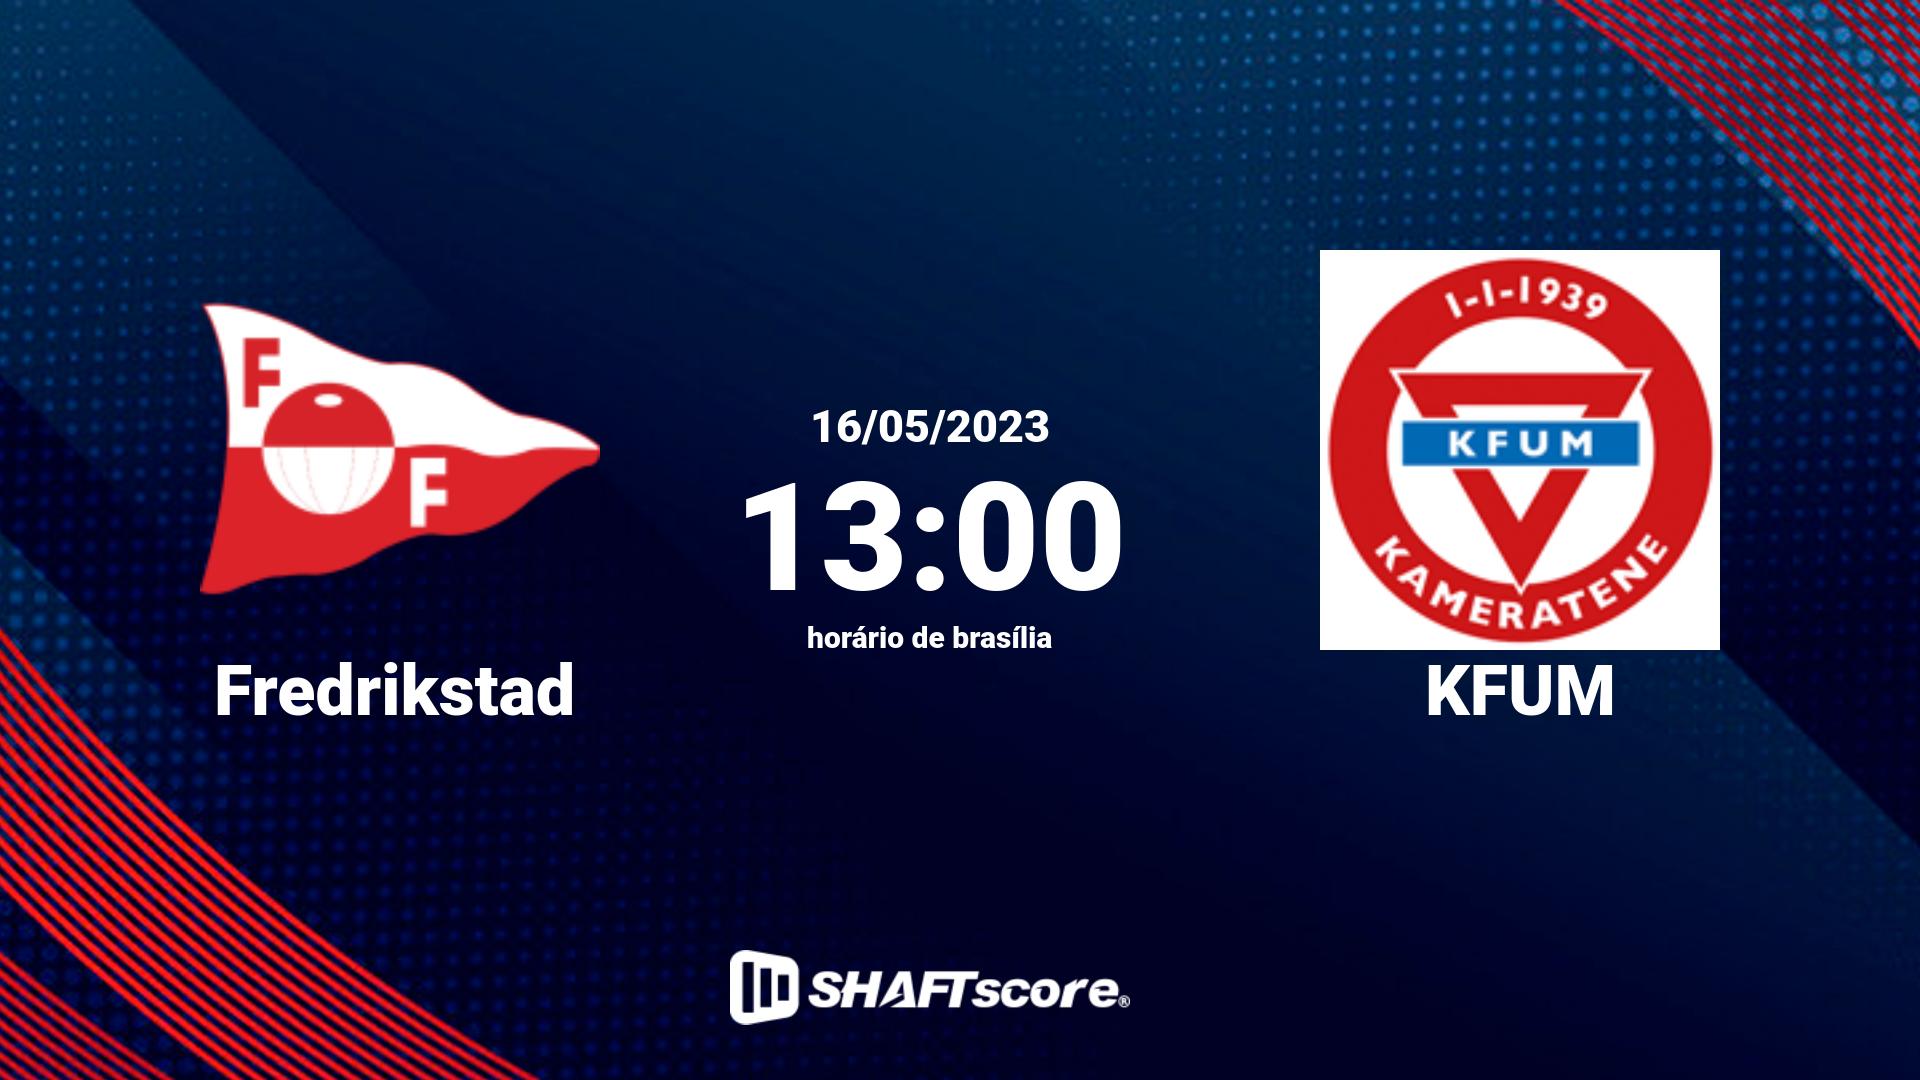 Estatísticas do jogo Fredrikstad vs KFUM 16.05 13:00